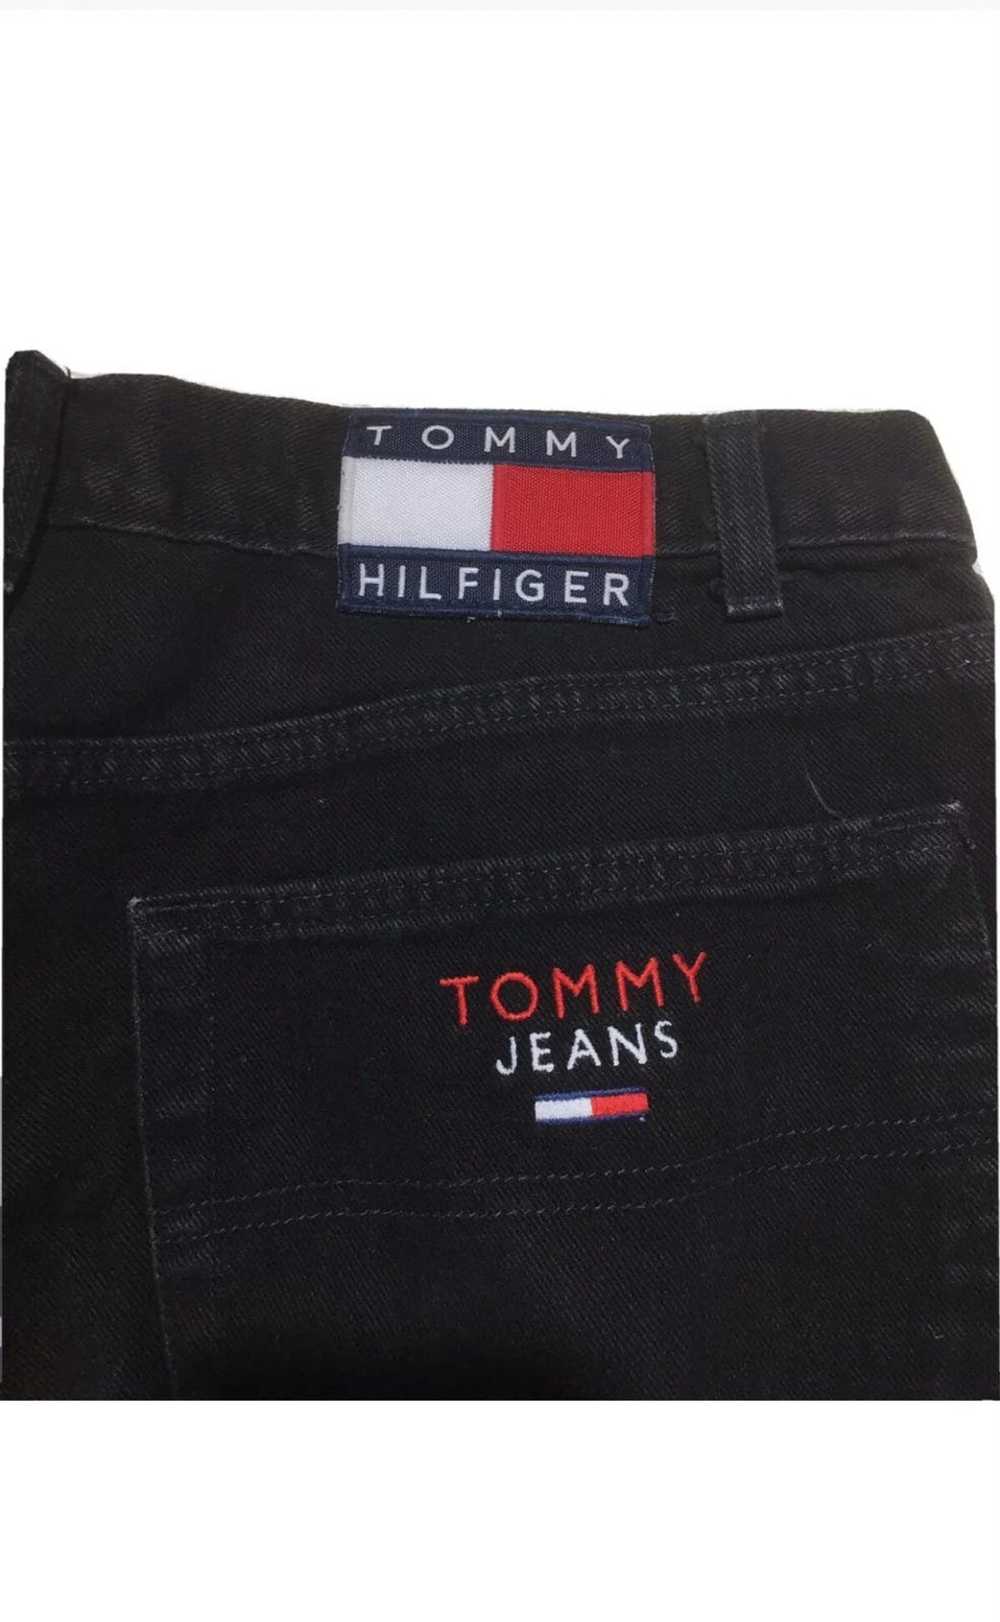 Tommy Hilfiger × Tommy Jeans × Vintage 90s Vintag… - image 3